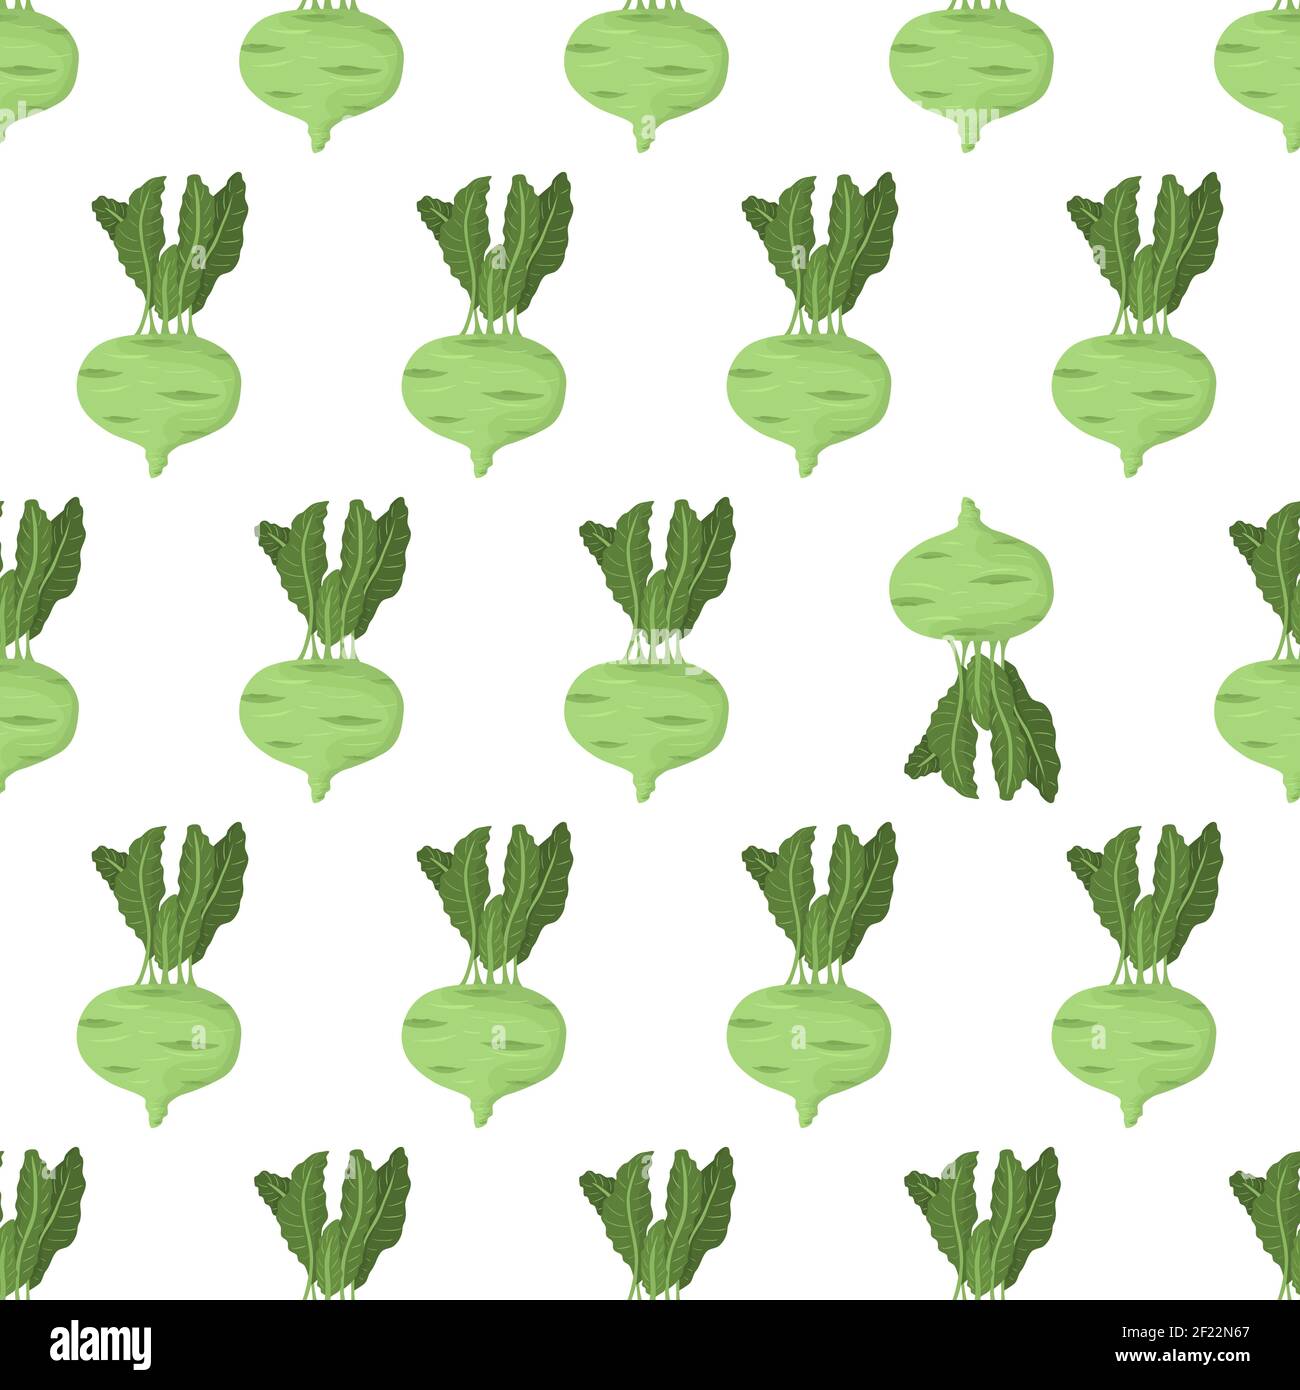 Cartoon Nahtloses Muster für Papierdesign mit grüner Kohlrabi Wurzel mit grünem Blatt. Farbenfroher Hintergrund. Auffälliges Element - invertiertes Gemüse. Stock Vektor